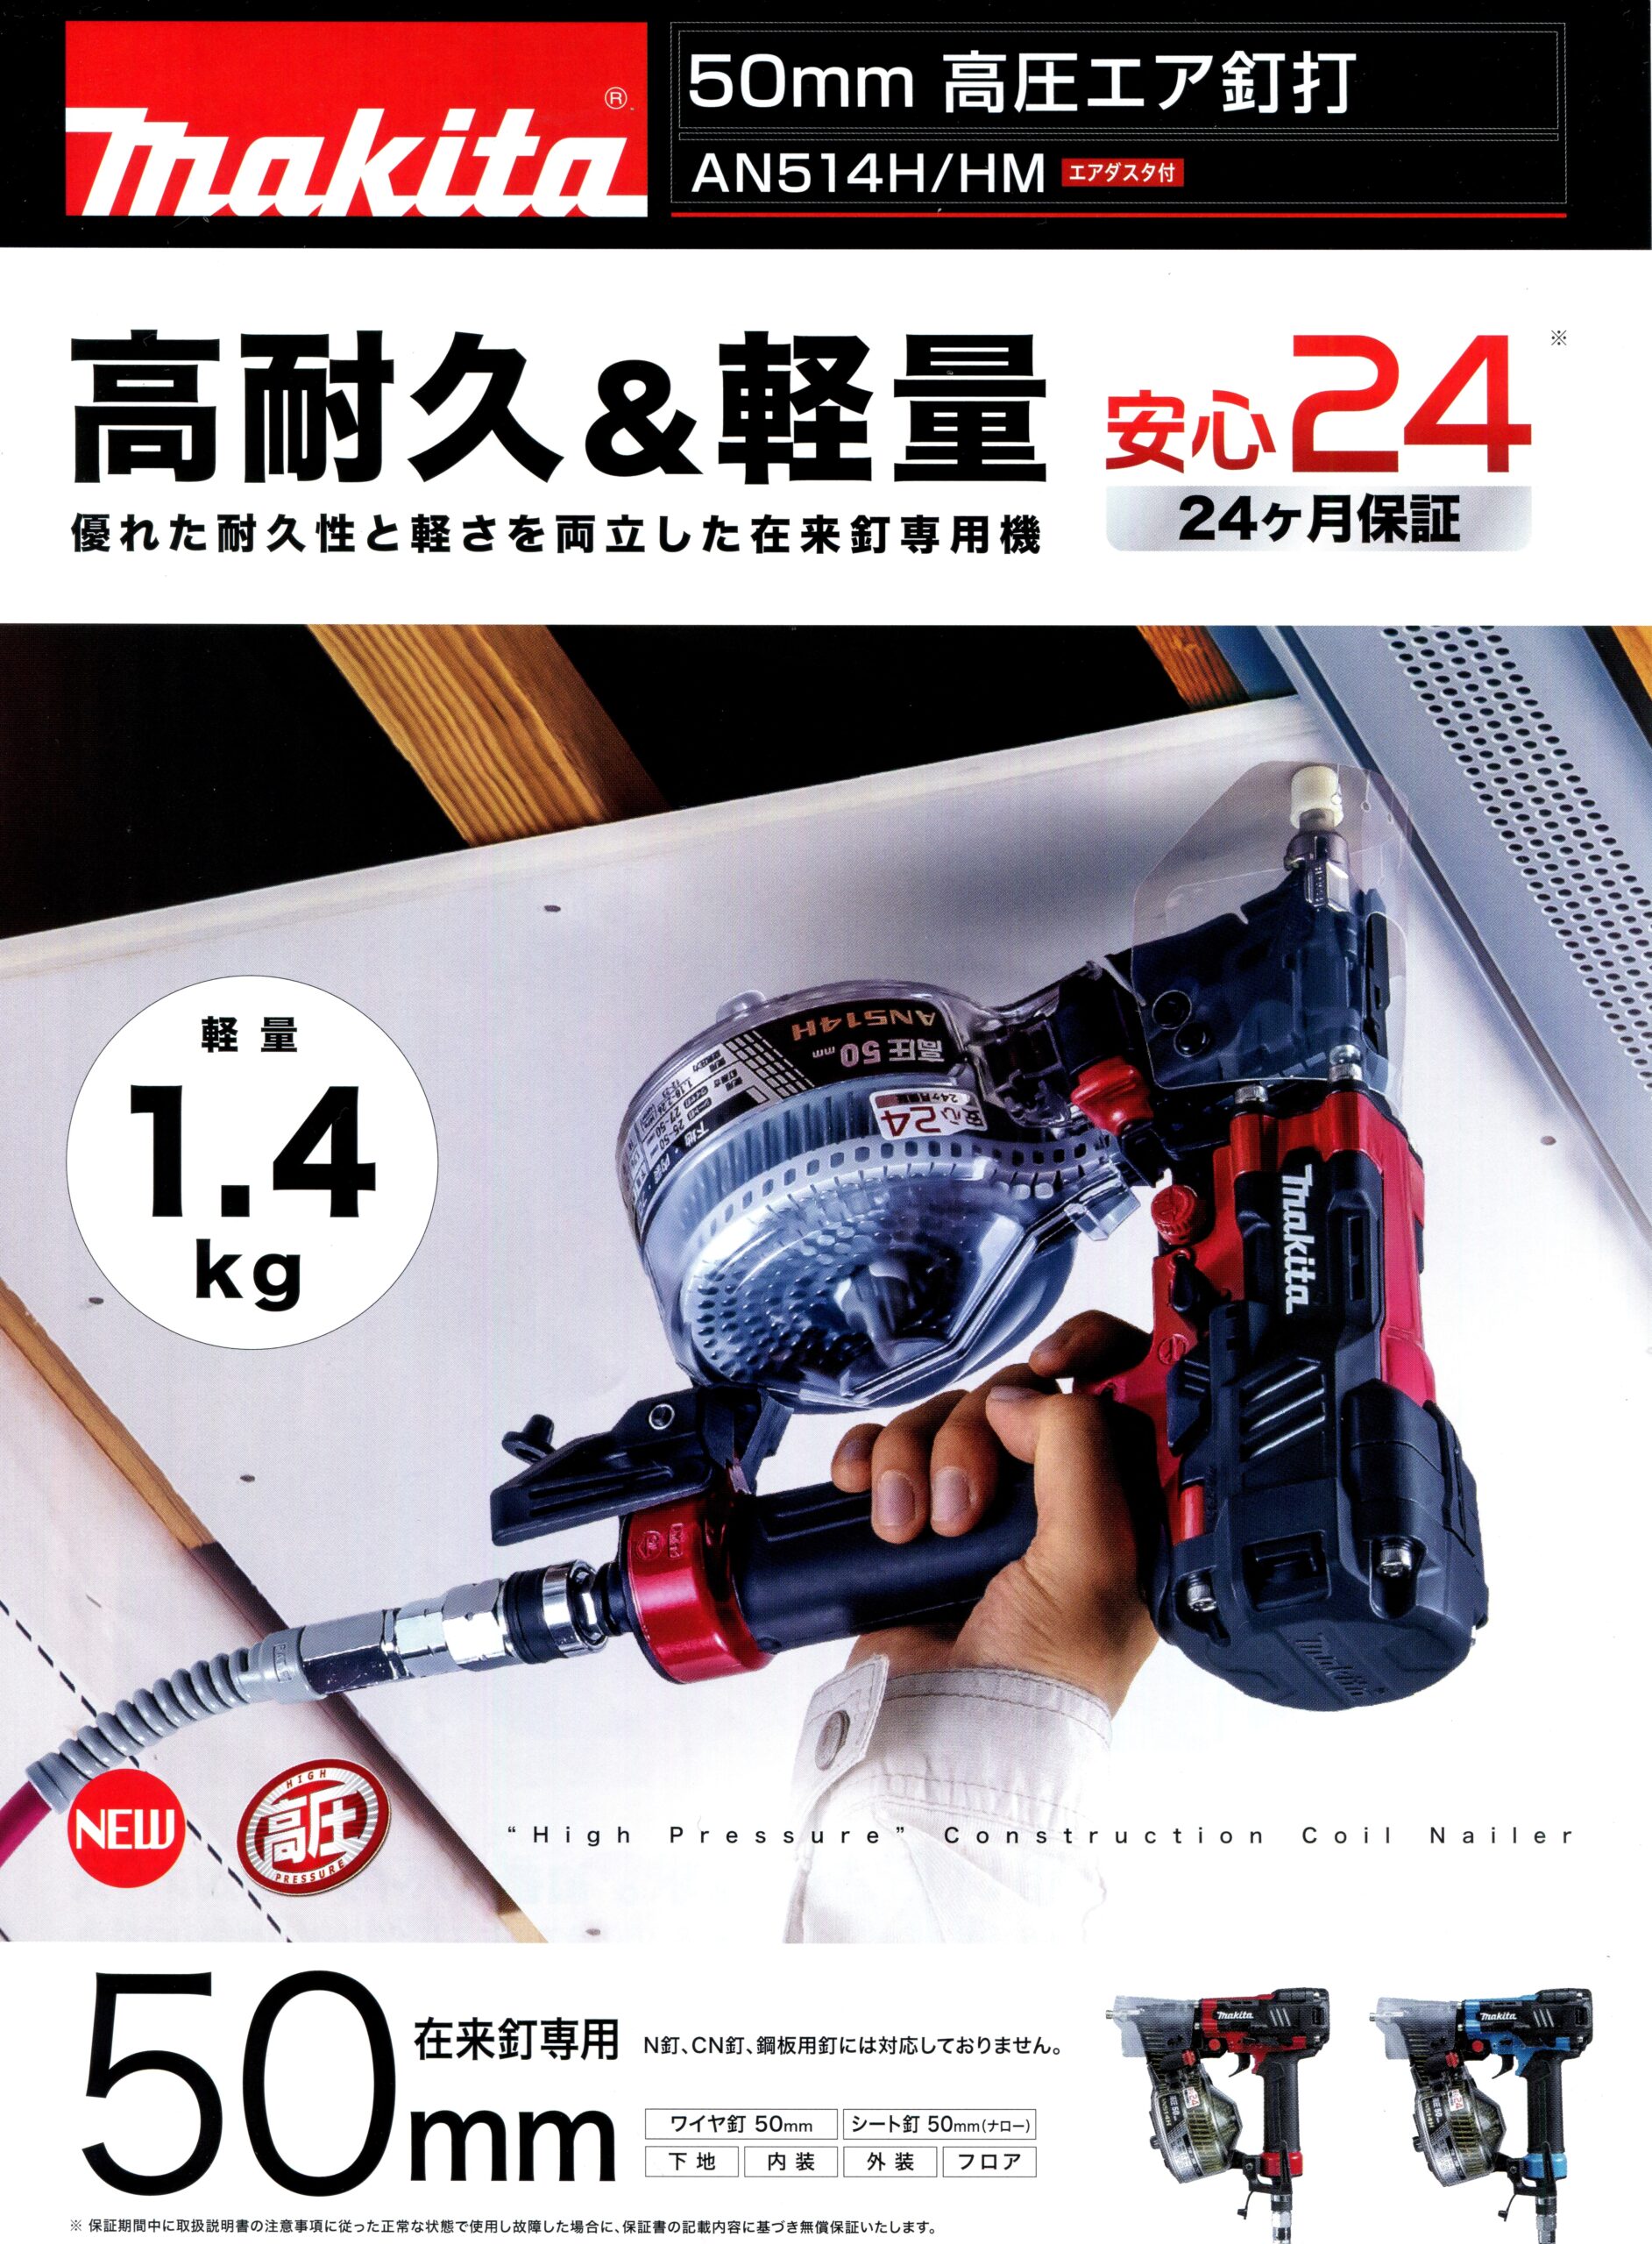 日本公式サイト (マキタ) 50mm 高圧エア釘打 AN534HM 青 プラスチック 